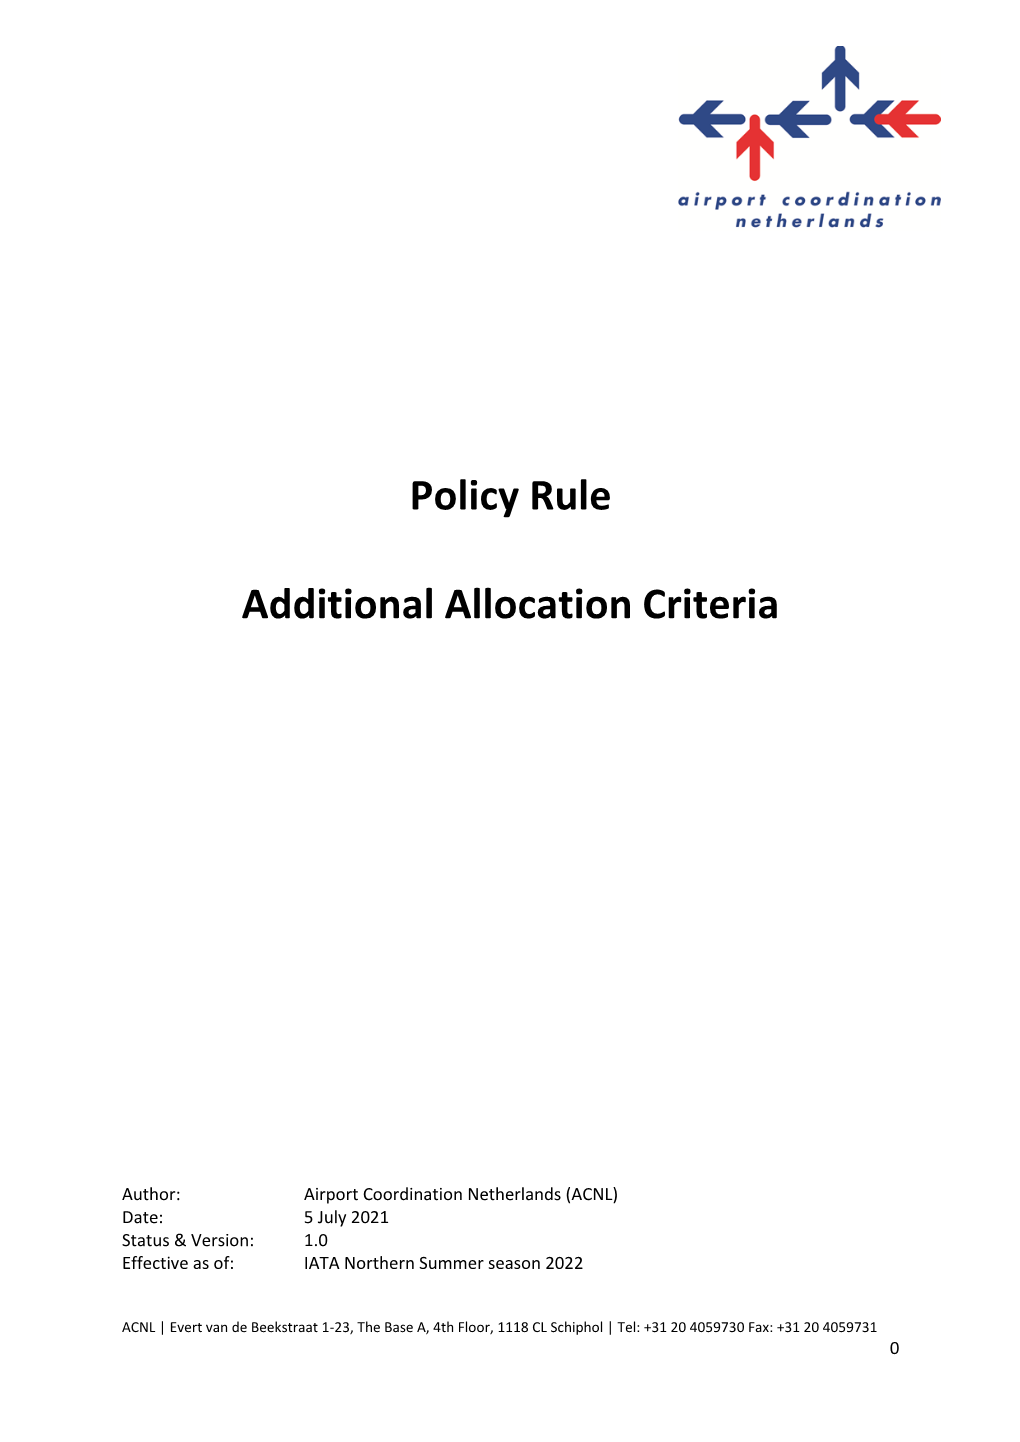 Policy Rule Additional Allocation Criteria